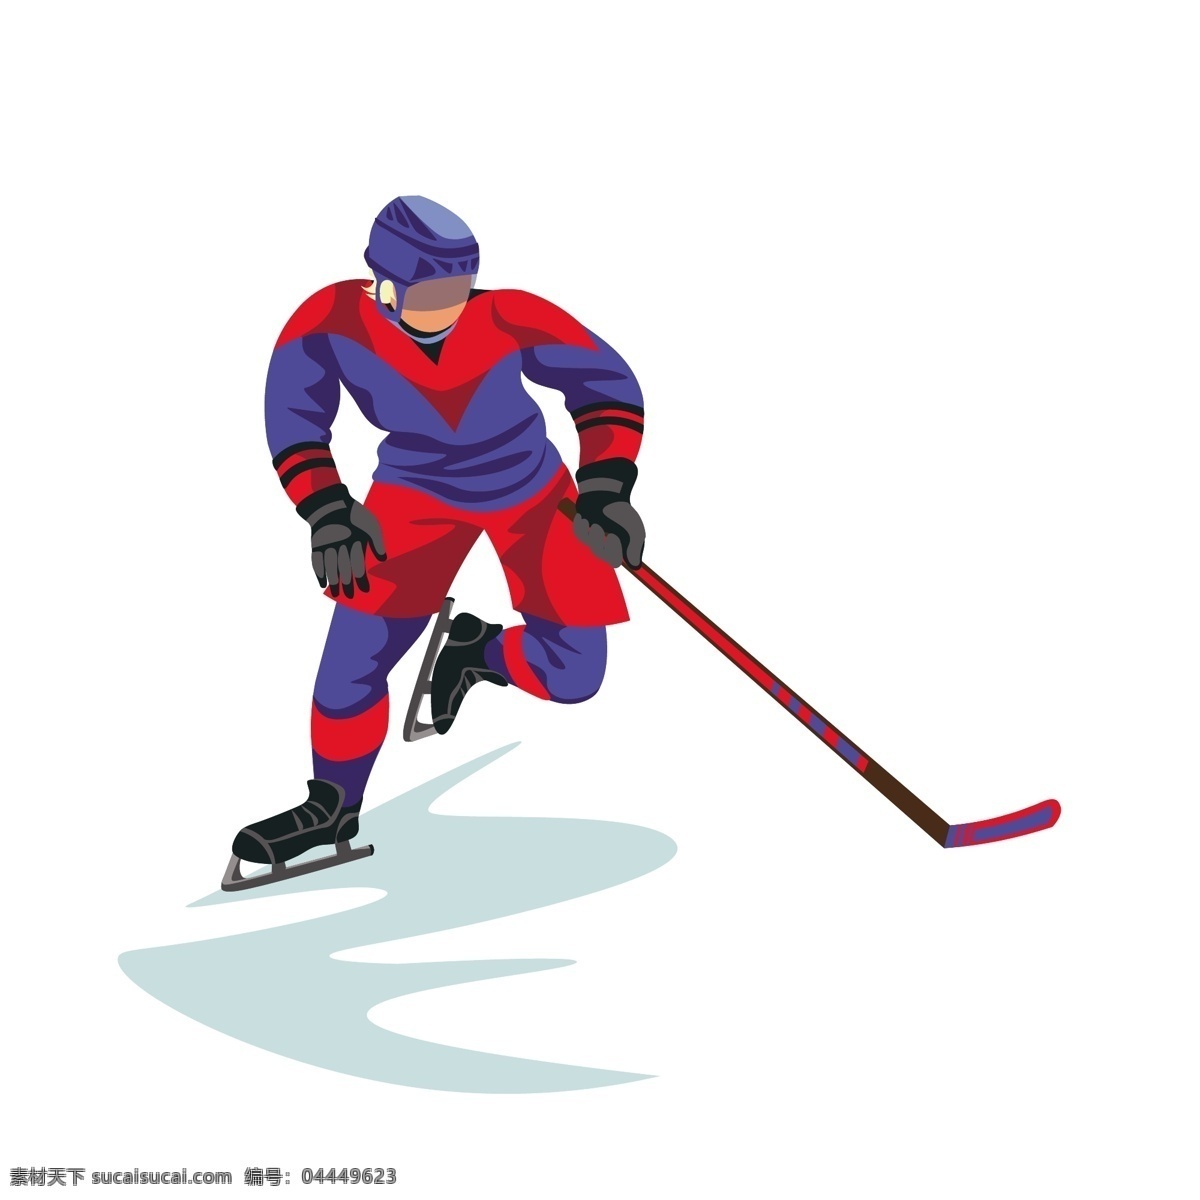 卡通 冰球 矢量 冰球运动员 运动员 卡通冰球 体育 体育运动